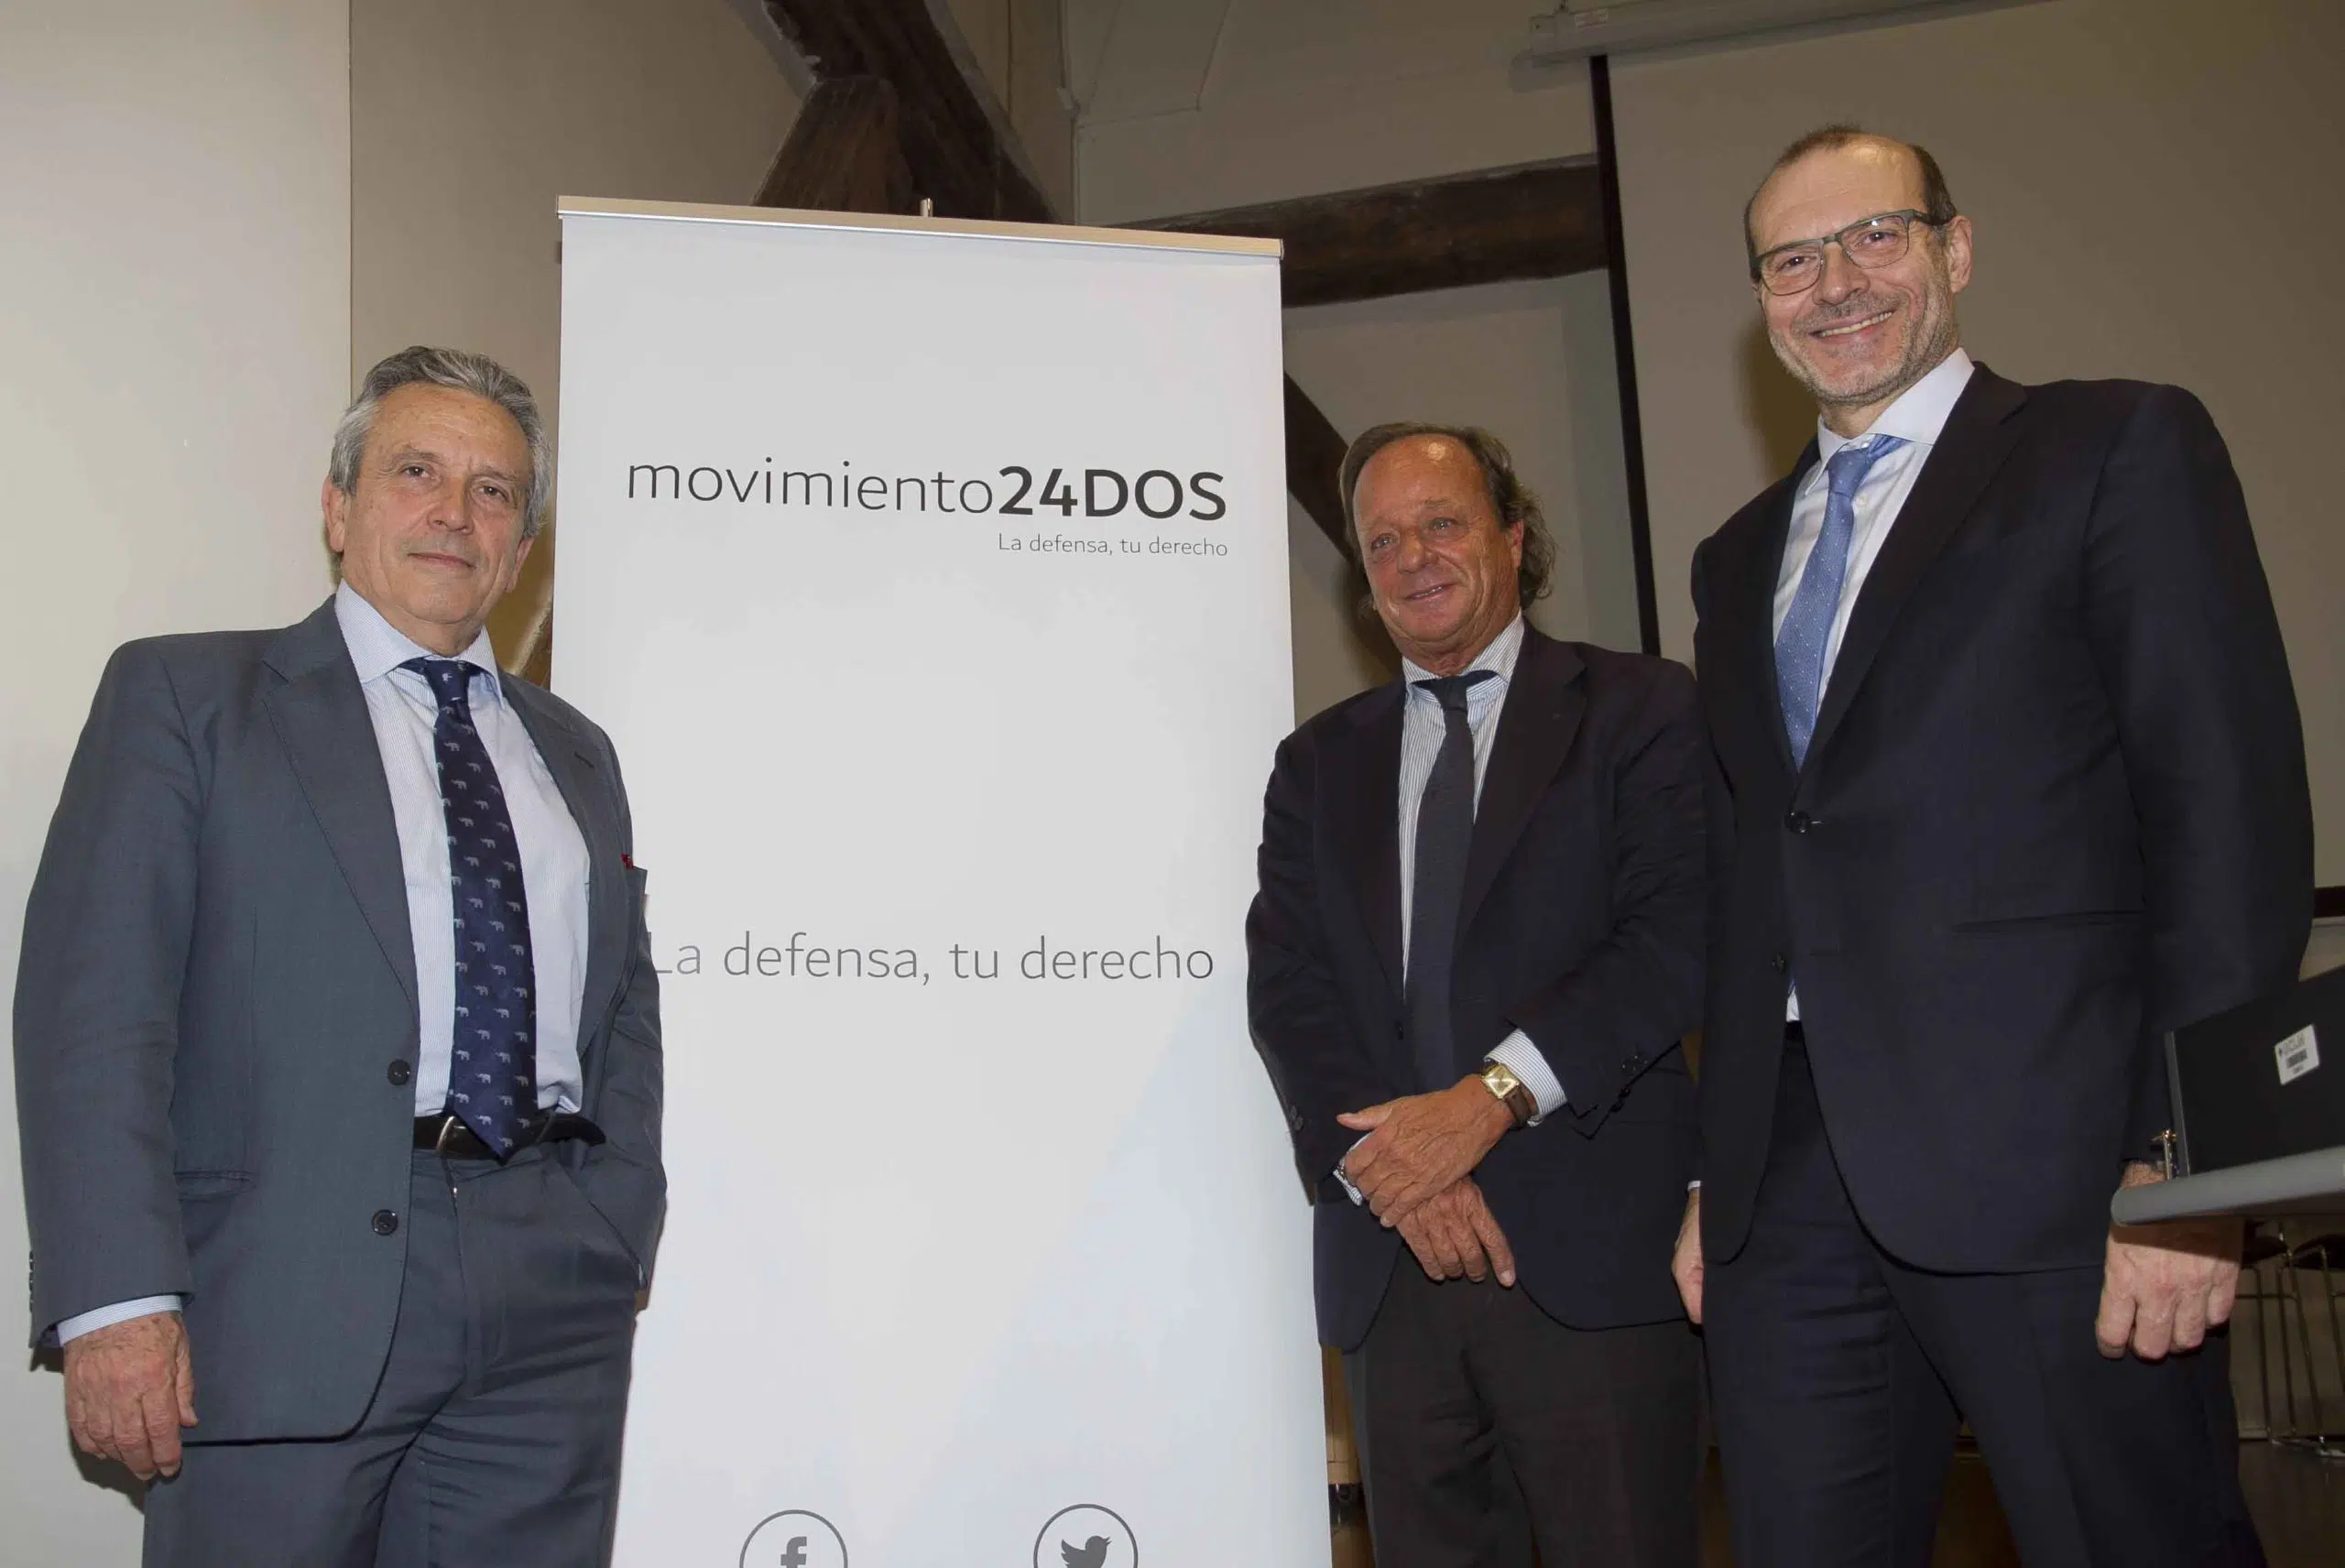 La candidatura al ICAM Movimiento 24DOS se convierte en asociación para defender los derechos y libertades